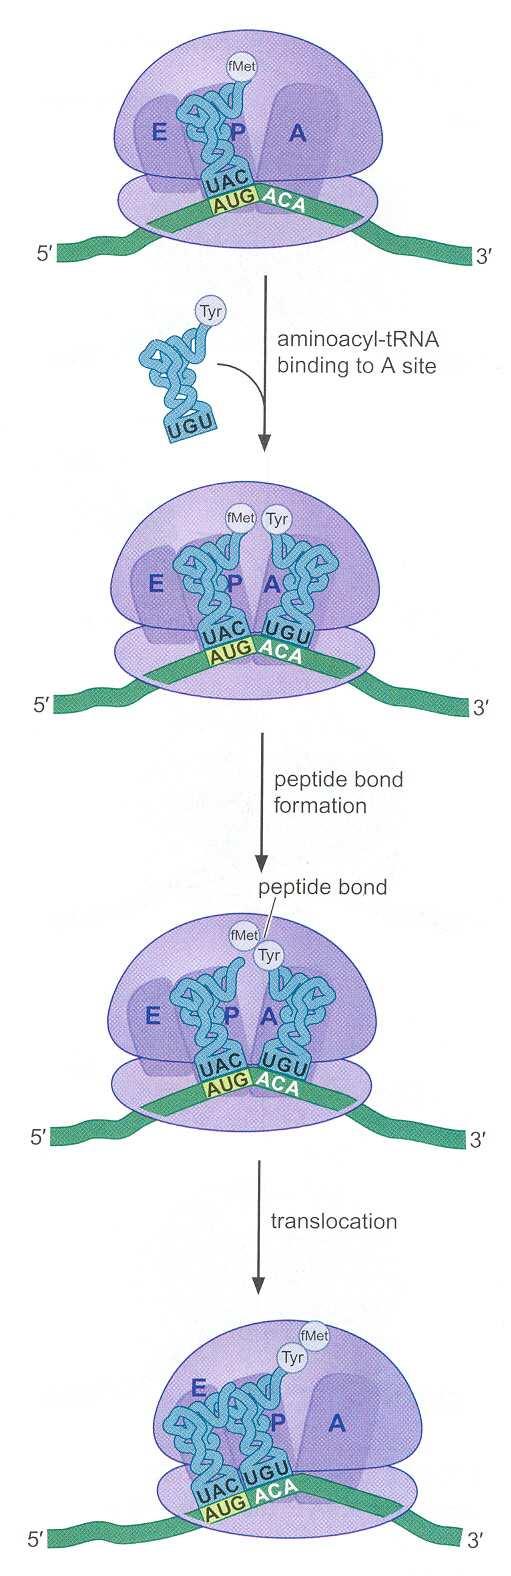 a na P mestu se nalazi inicijatorska trk koja nosi metionin, odnosno formilmetionin. Tada počinje druga faza translacije elongacija polipeptidnog lanca.